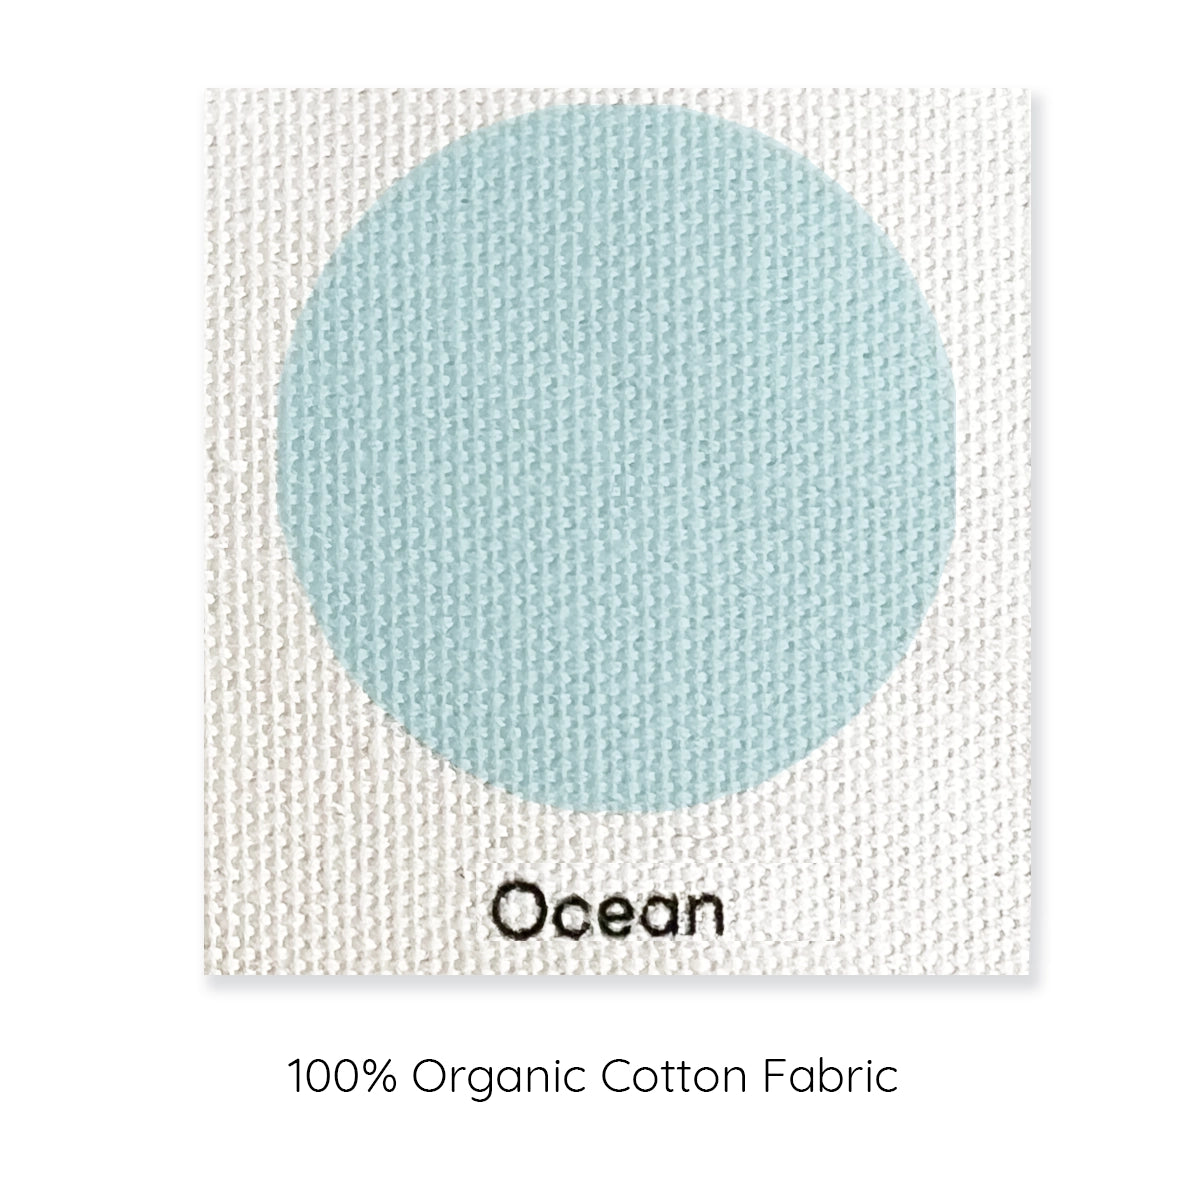 ocean blue cushion cover sample organic cotton